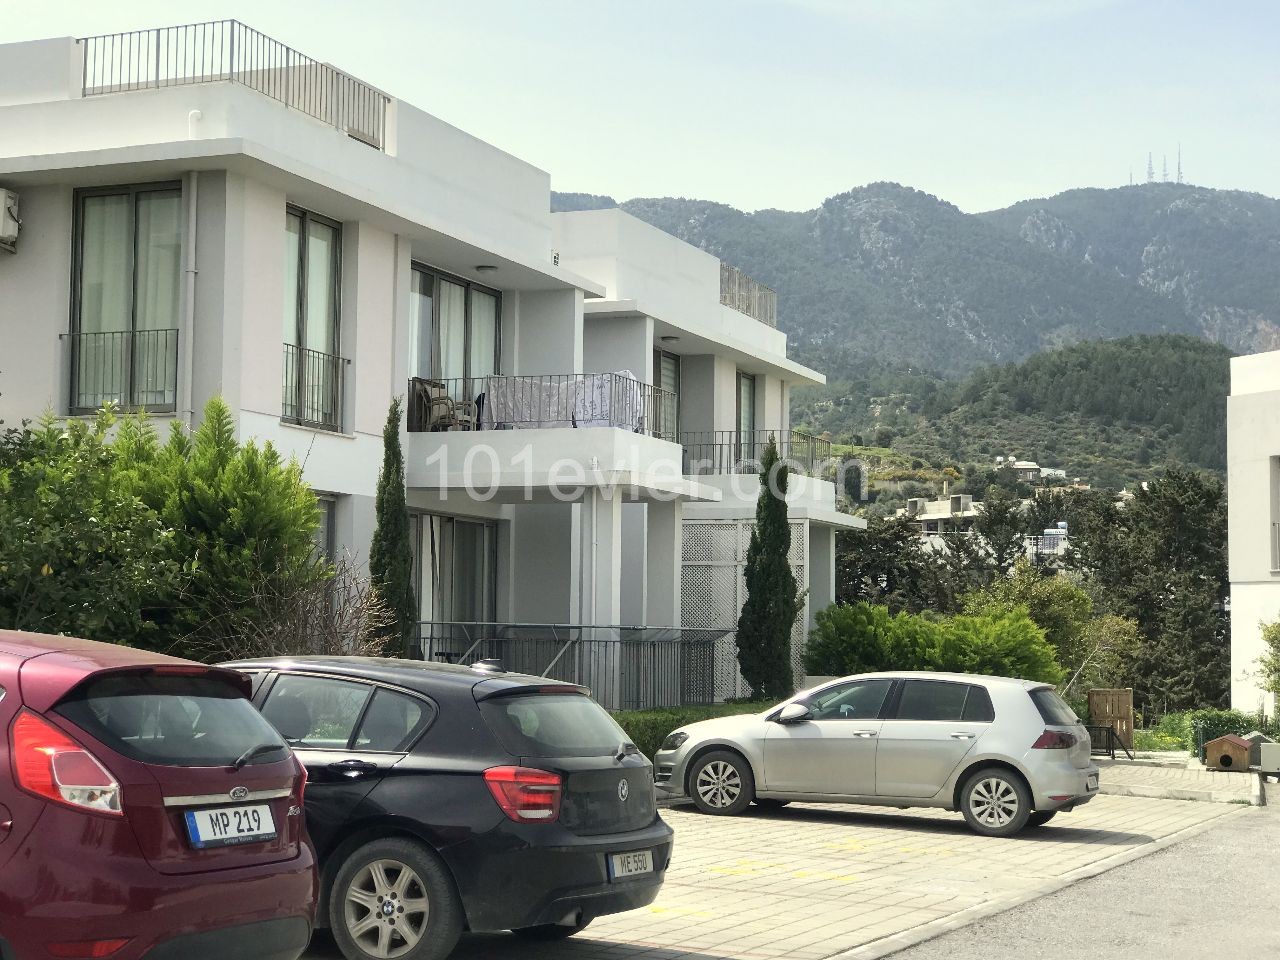 Reihenhauswohnung im 1. Stock auf einem Grundstück mit 24x7-Sicherheit in Kyrenia Alsancak ist zu vermieten.05338403555